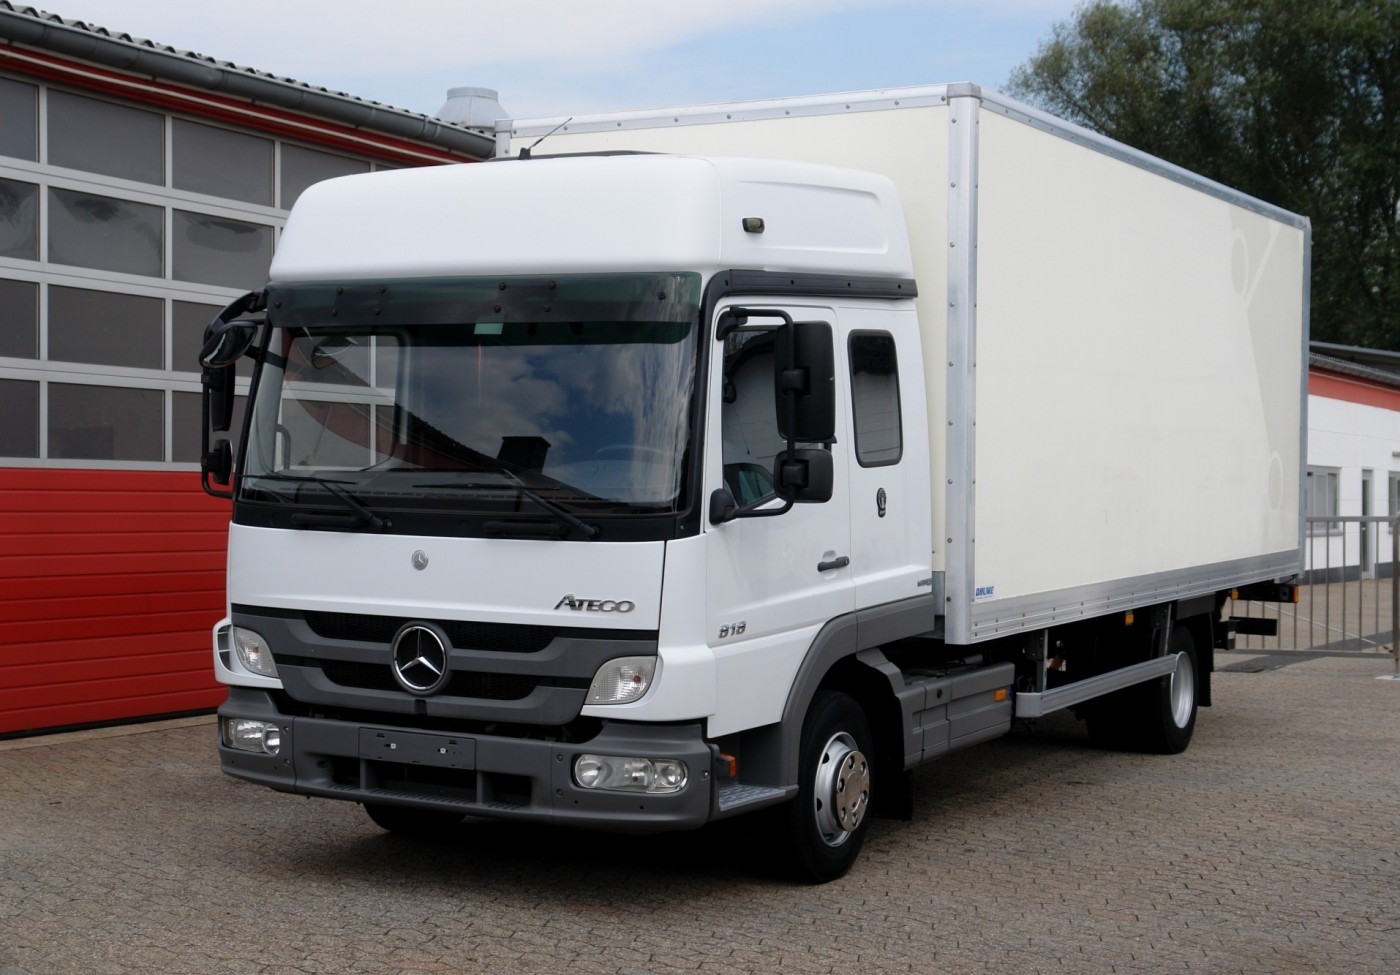 Mercedes-Benz - Atego 818 RL Dobozos teherautó 6,20m Kézi váltó, légrugózás, Bigspace L fülke, Emelőhátfa 1500kg EURO5